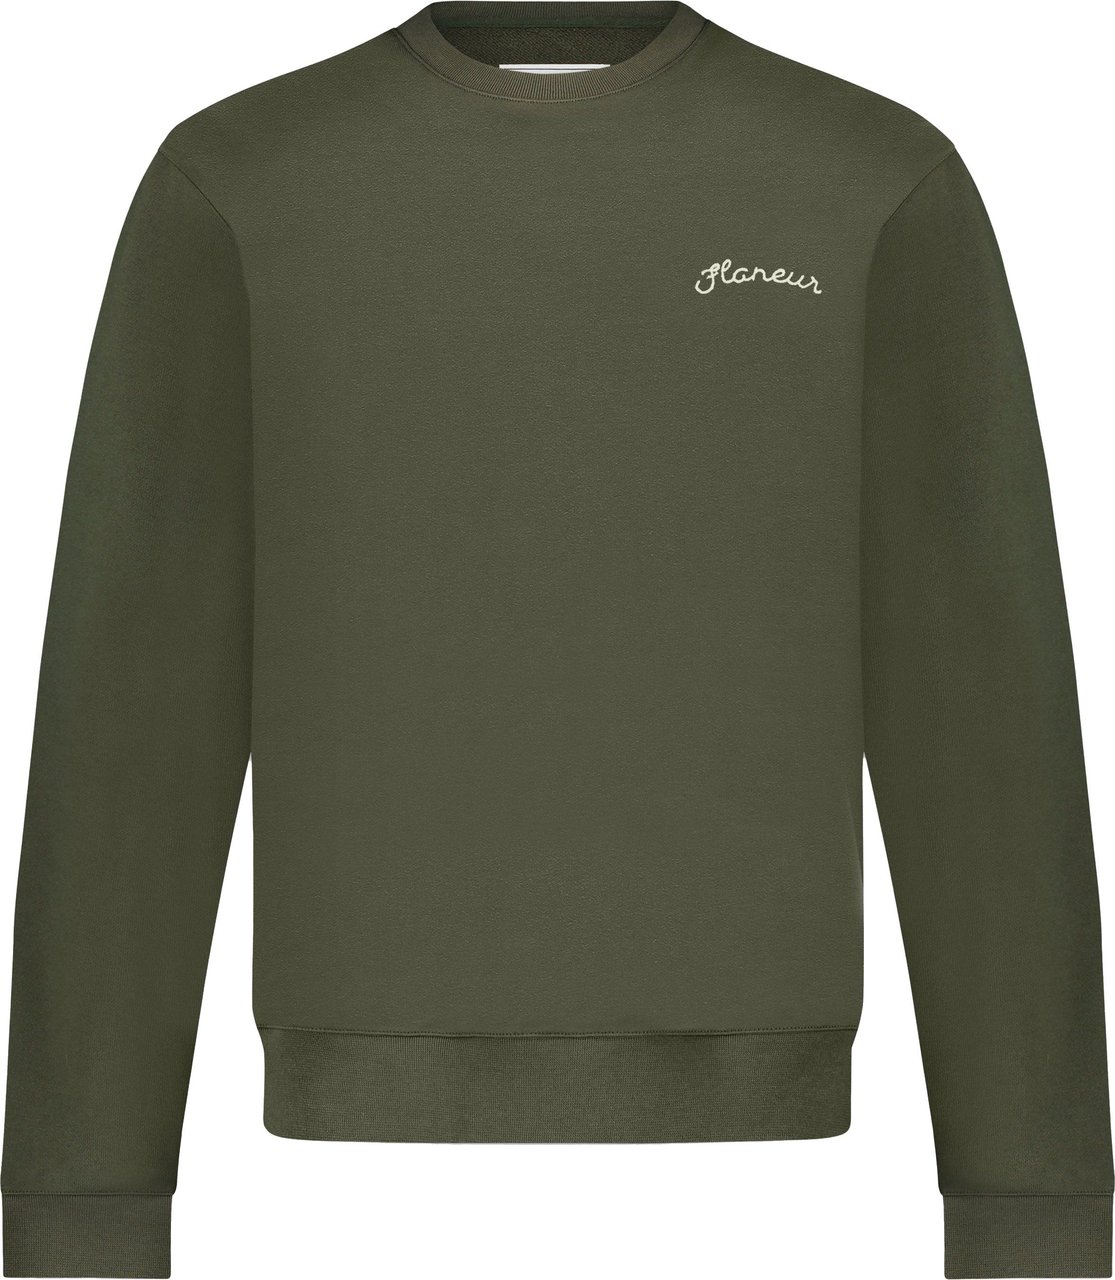 FLÂNEUR Signature Sweater Khaki Groen